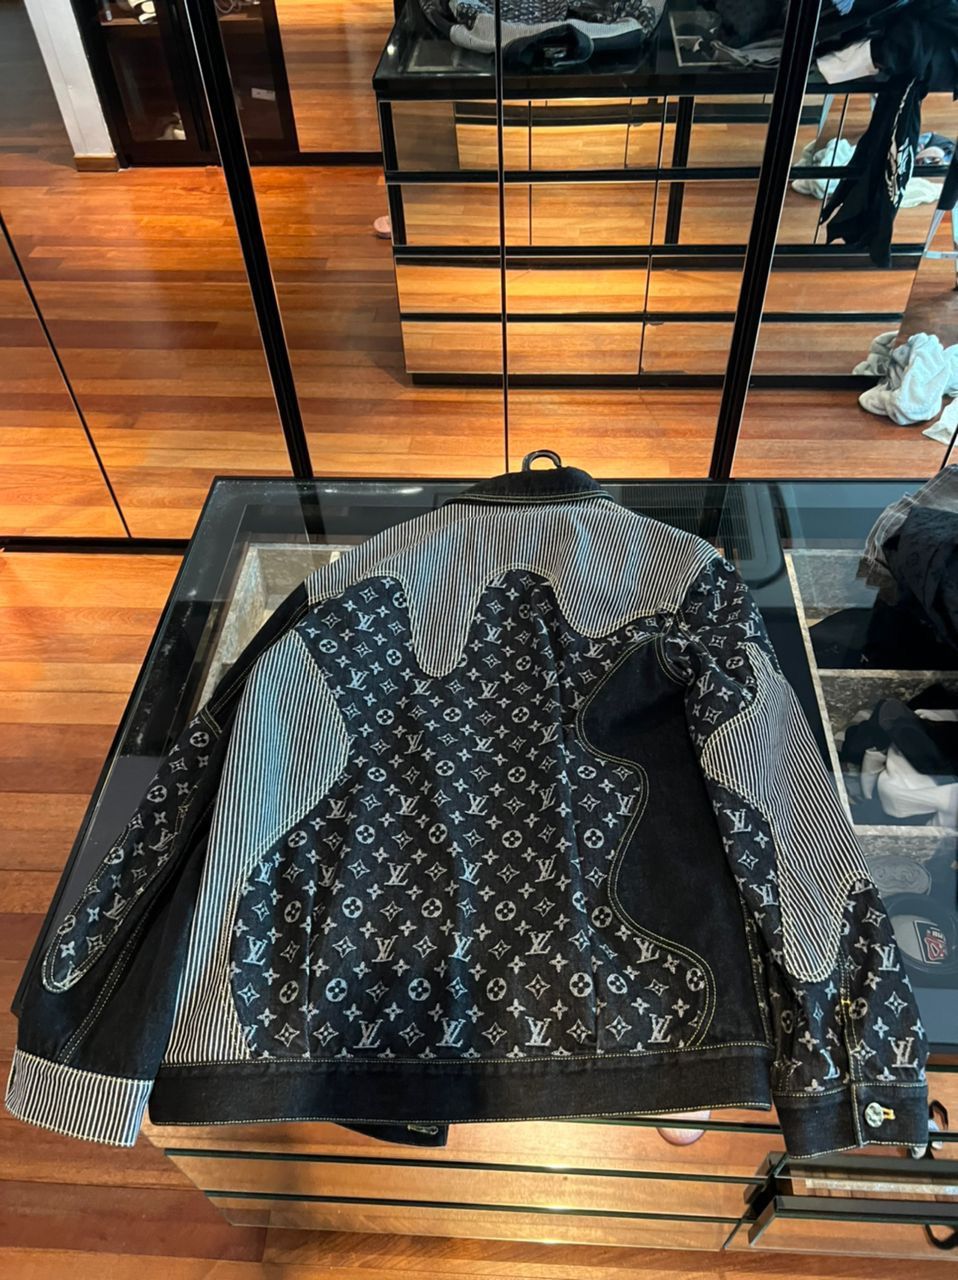 Louis Vuitton Monogram Crazy Denim Workwear Jacket BLACK. Size 50